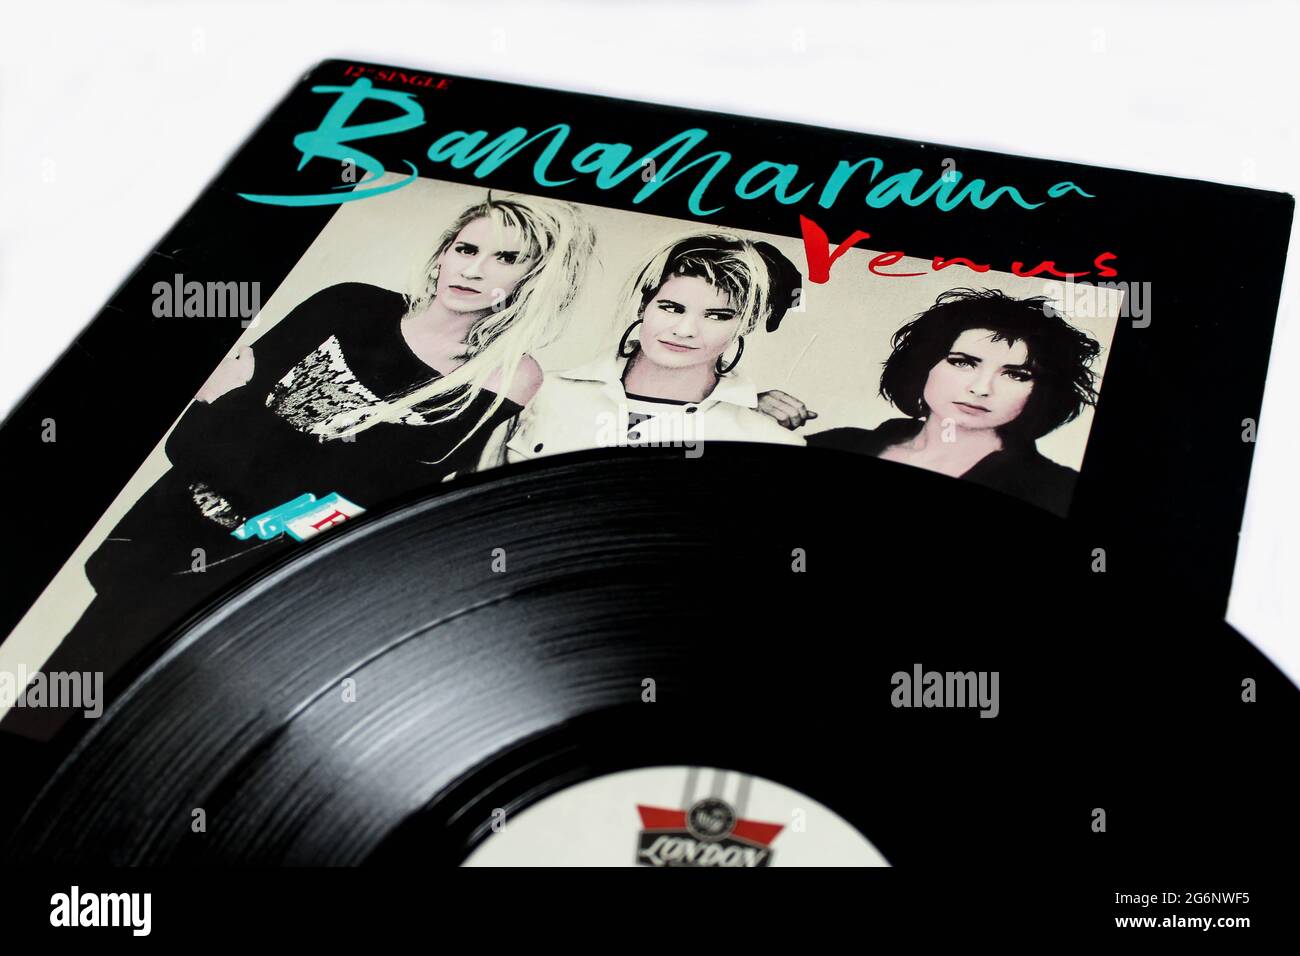 Disco-Band der 80er und 90er Jahre, Bananarama, Musikalbum auf Vinyl-LP-Disc. Single Venus Song Album Cover Stockfoto